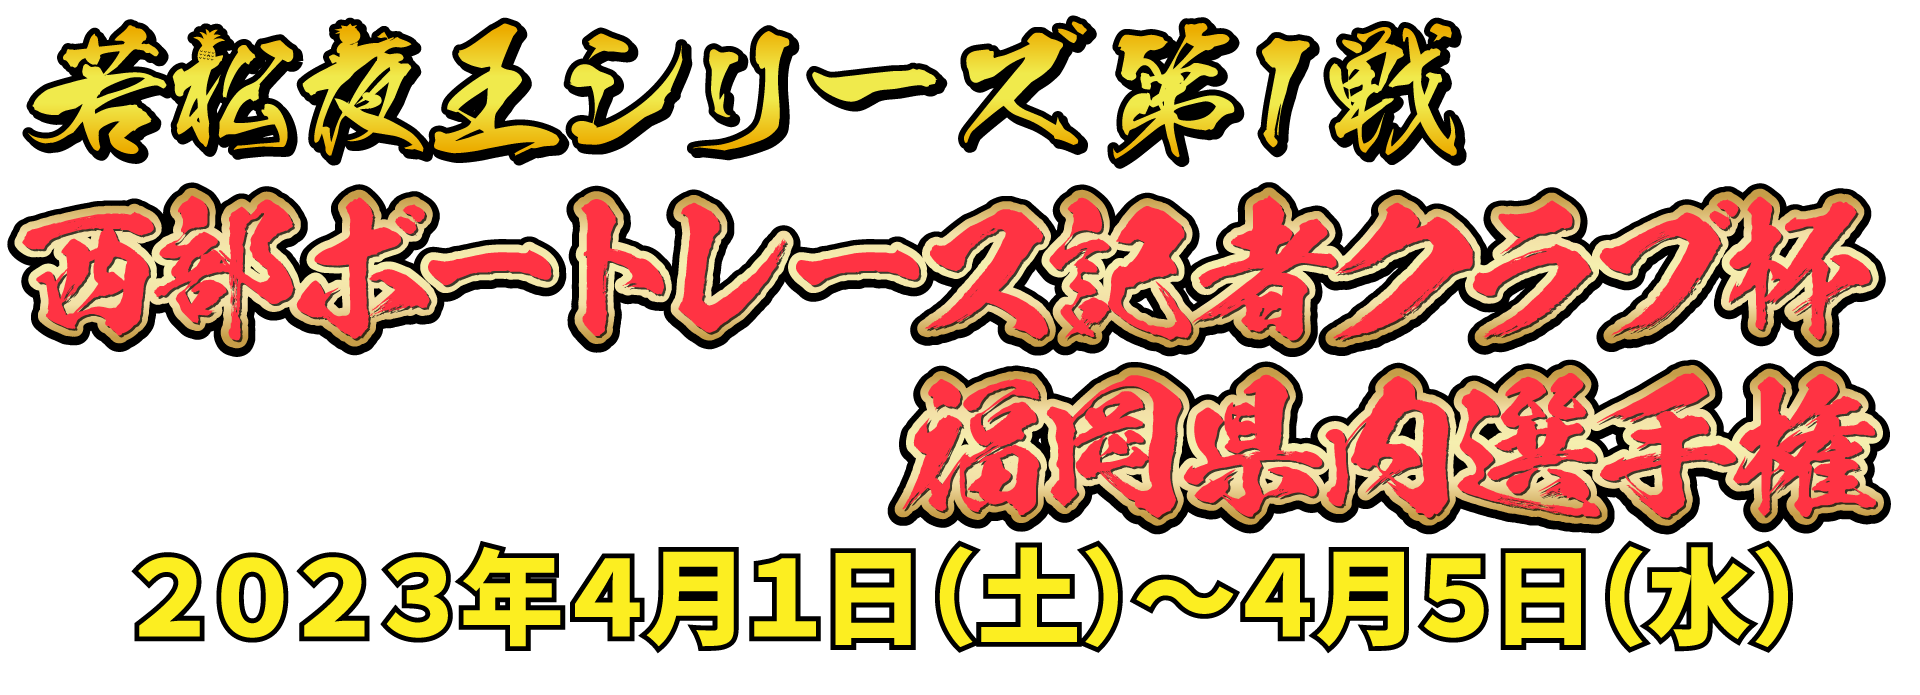 若松夜王シリーズ第1戦 西部ボートレース記者クラブ杯福岡県内選手権